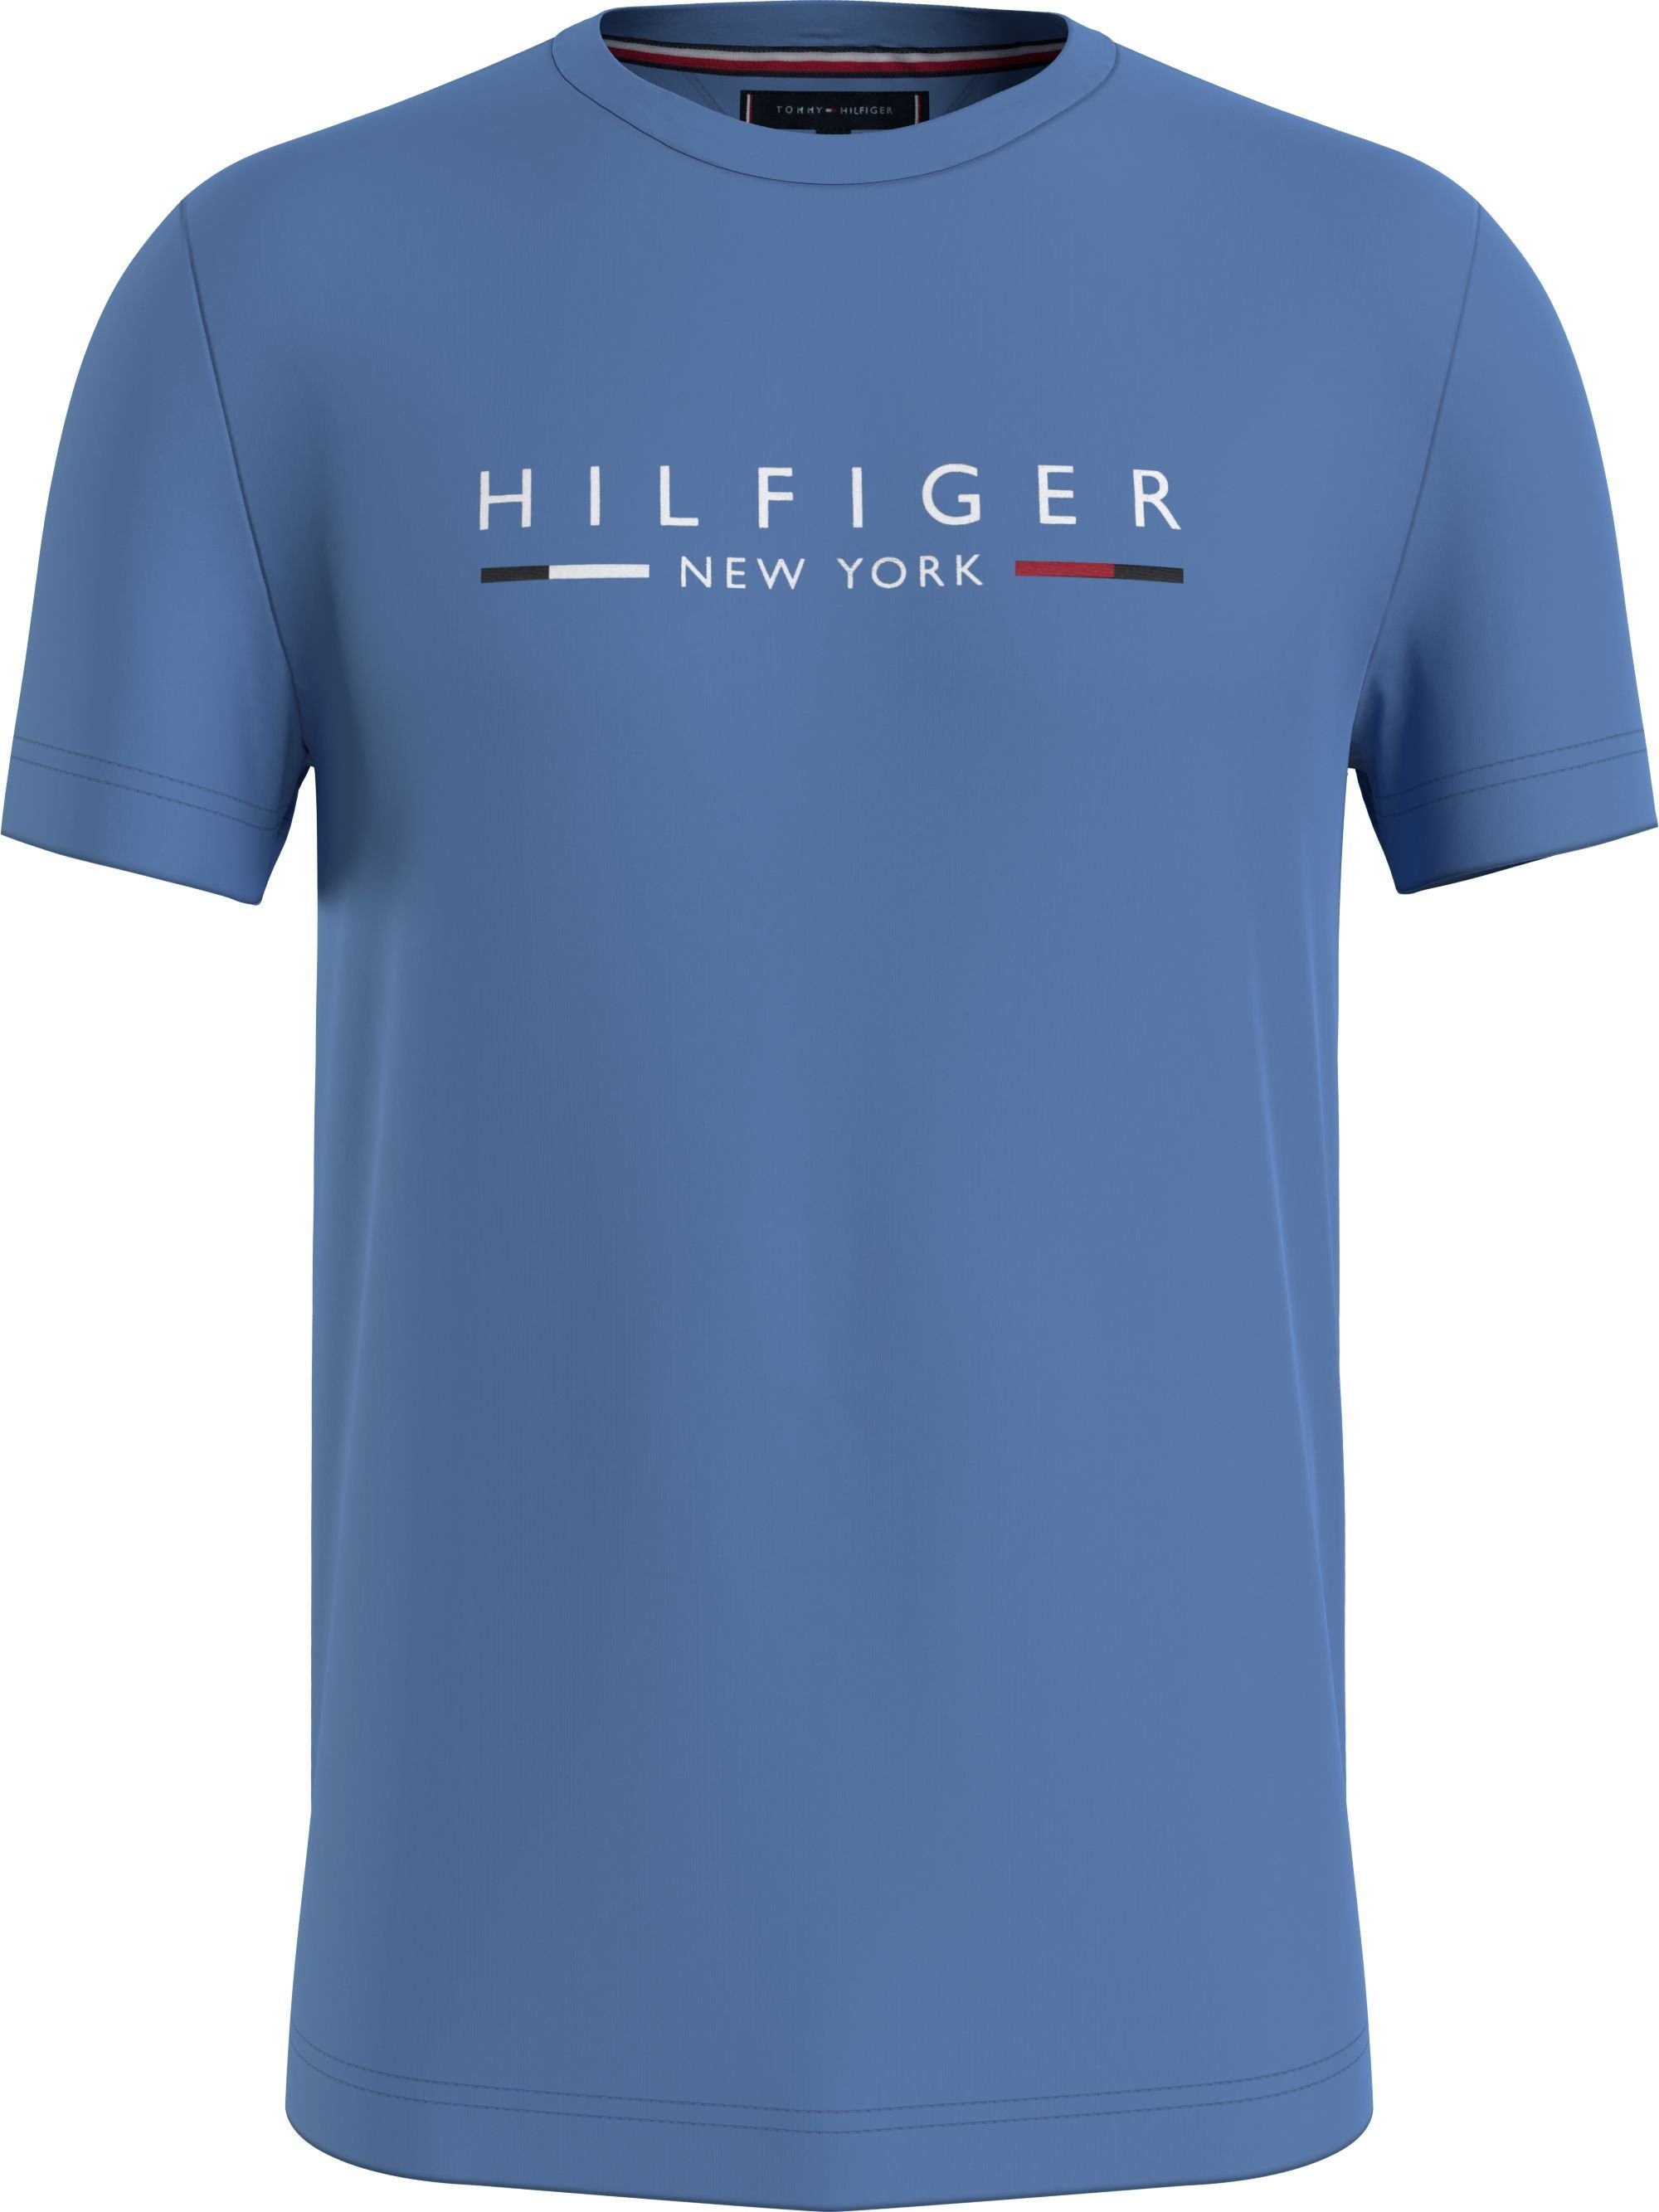 Logoschriftzug Brust Hilfiger blau HILFIGER YORK NEW TEE Tommy der auf T-Shirt mit